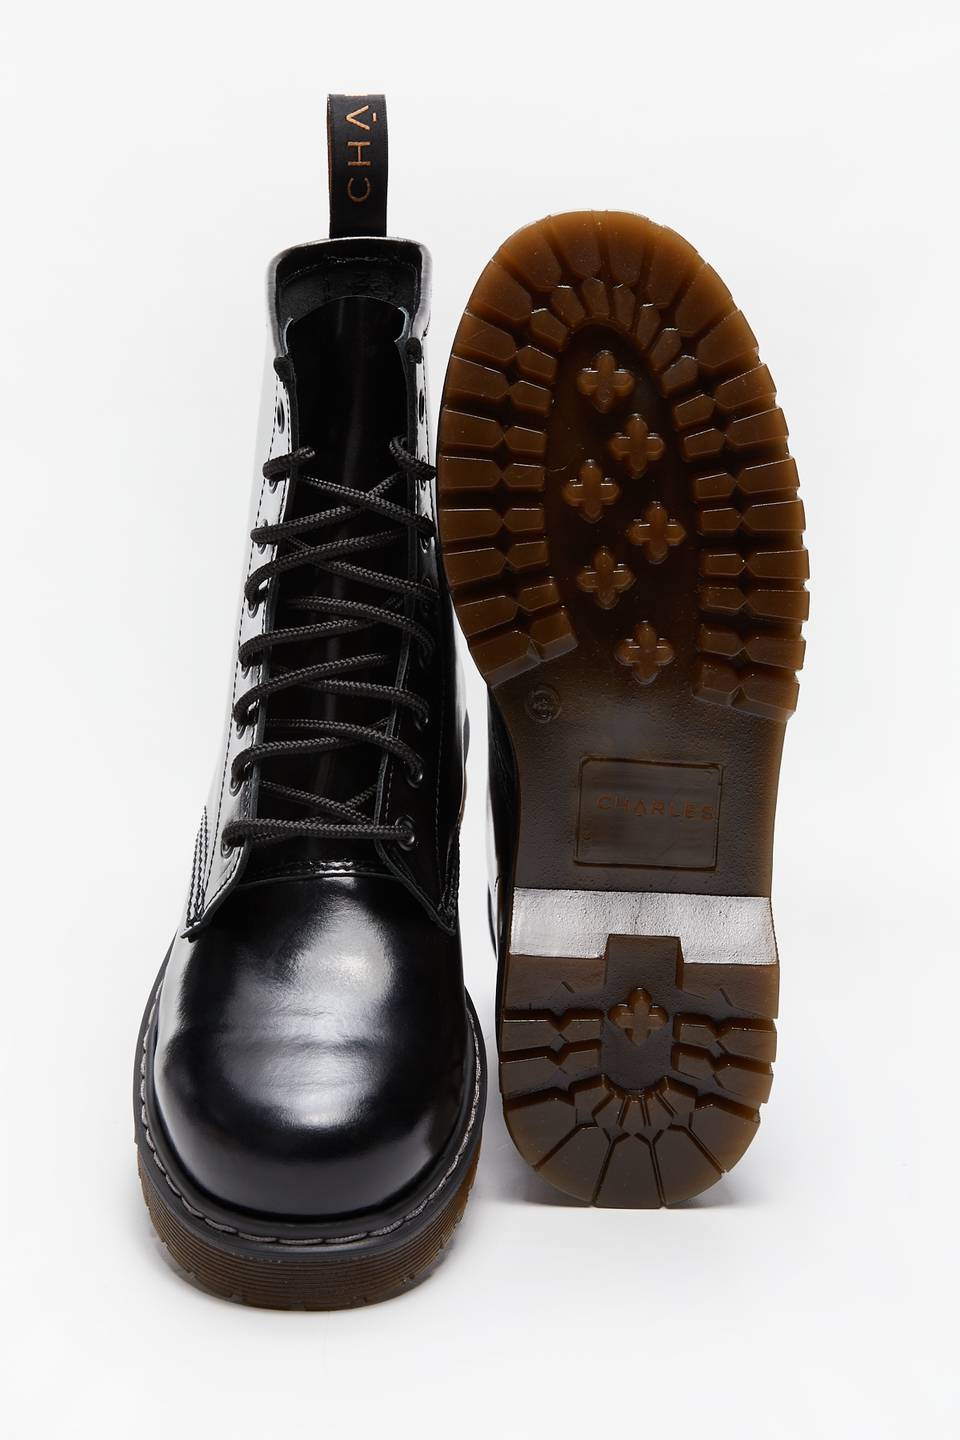 Buty za kostkę Charles Footwear ZA KOSTKĘ 1972W002 Black Polished